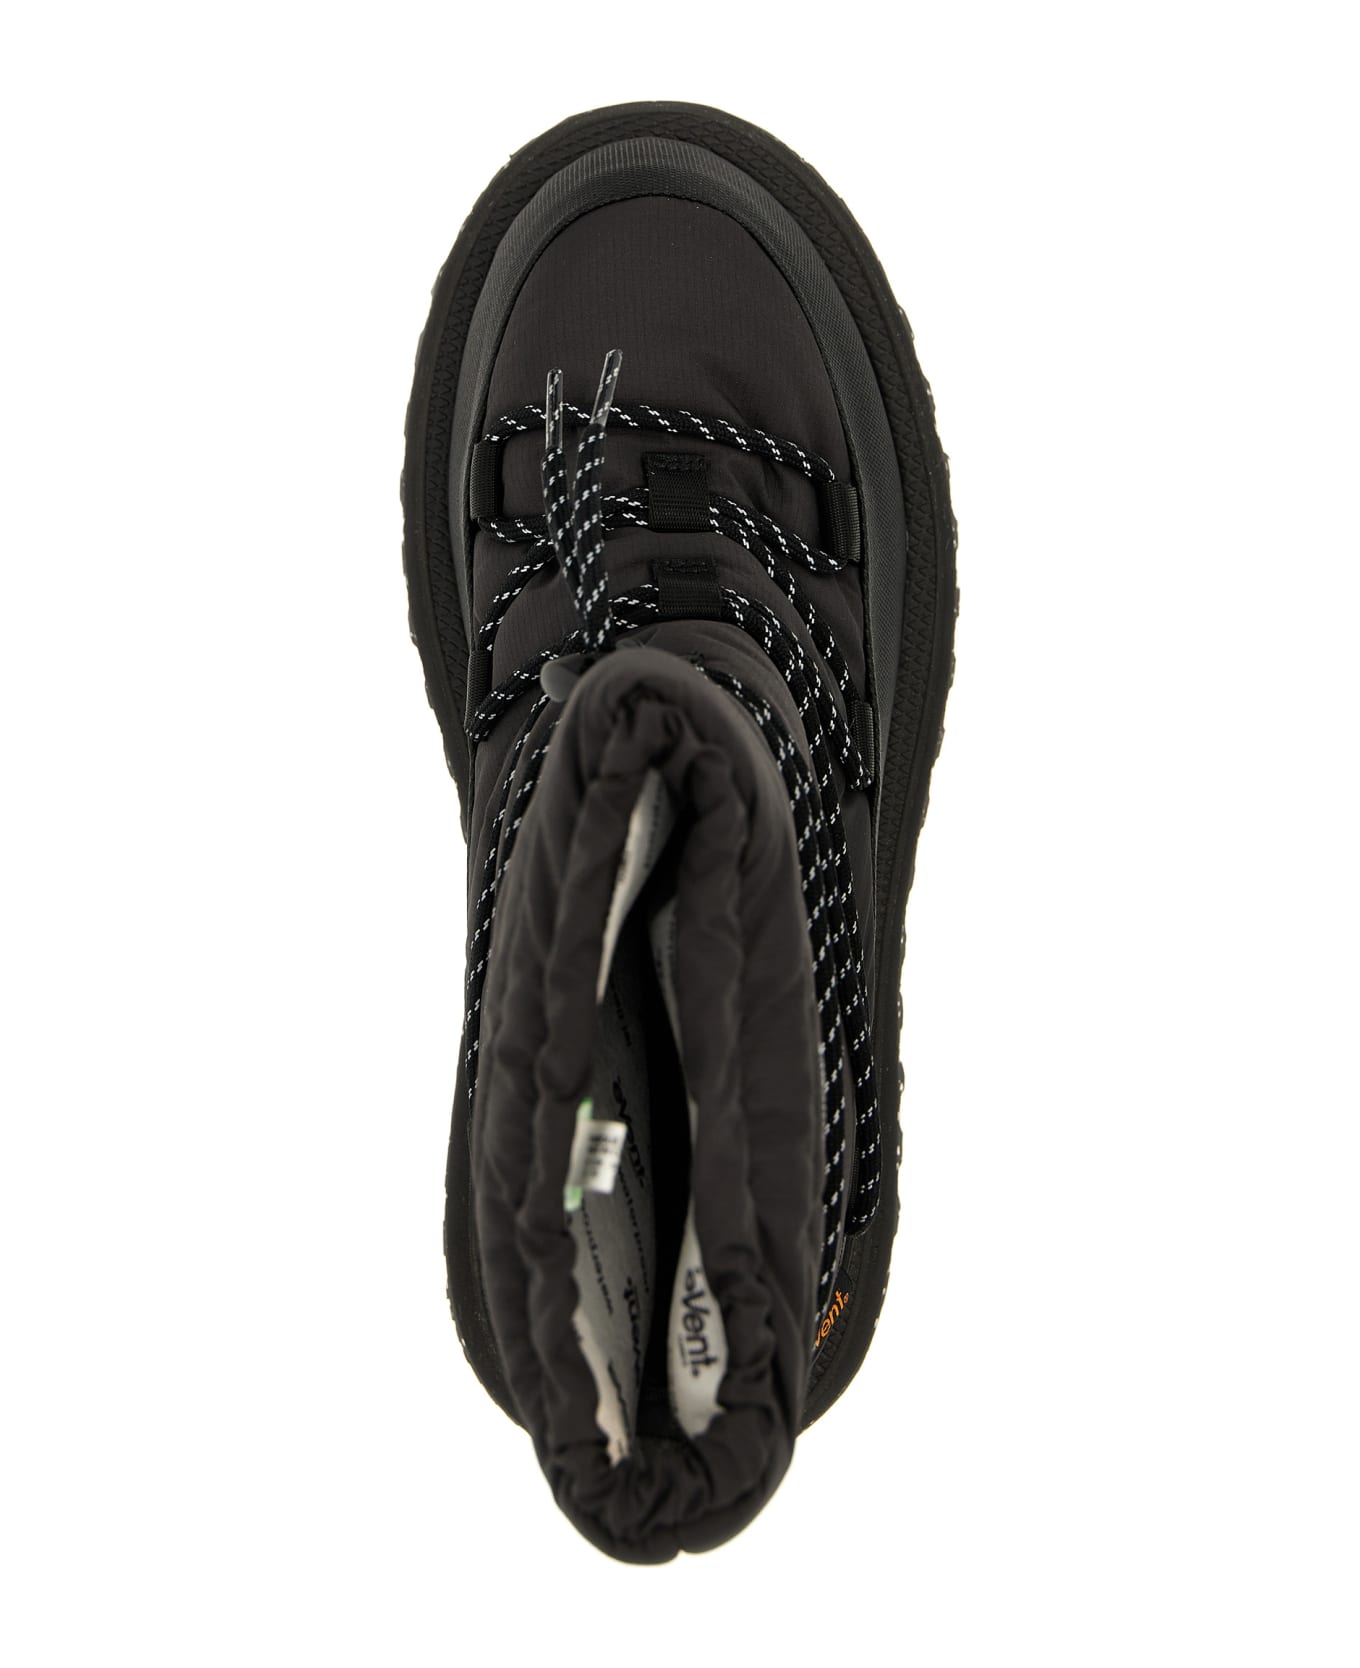 SUICOKE 'bower' Ankle Boots - Black シューズ